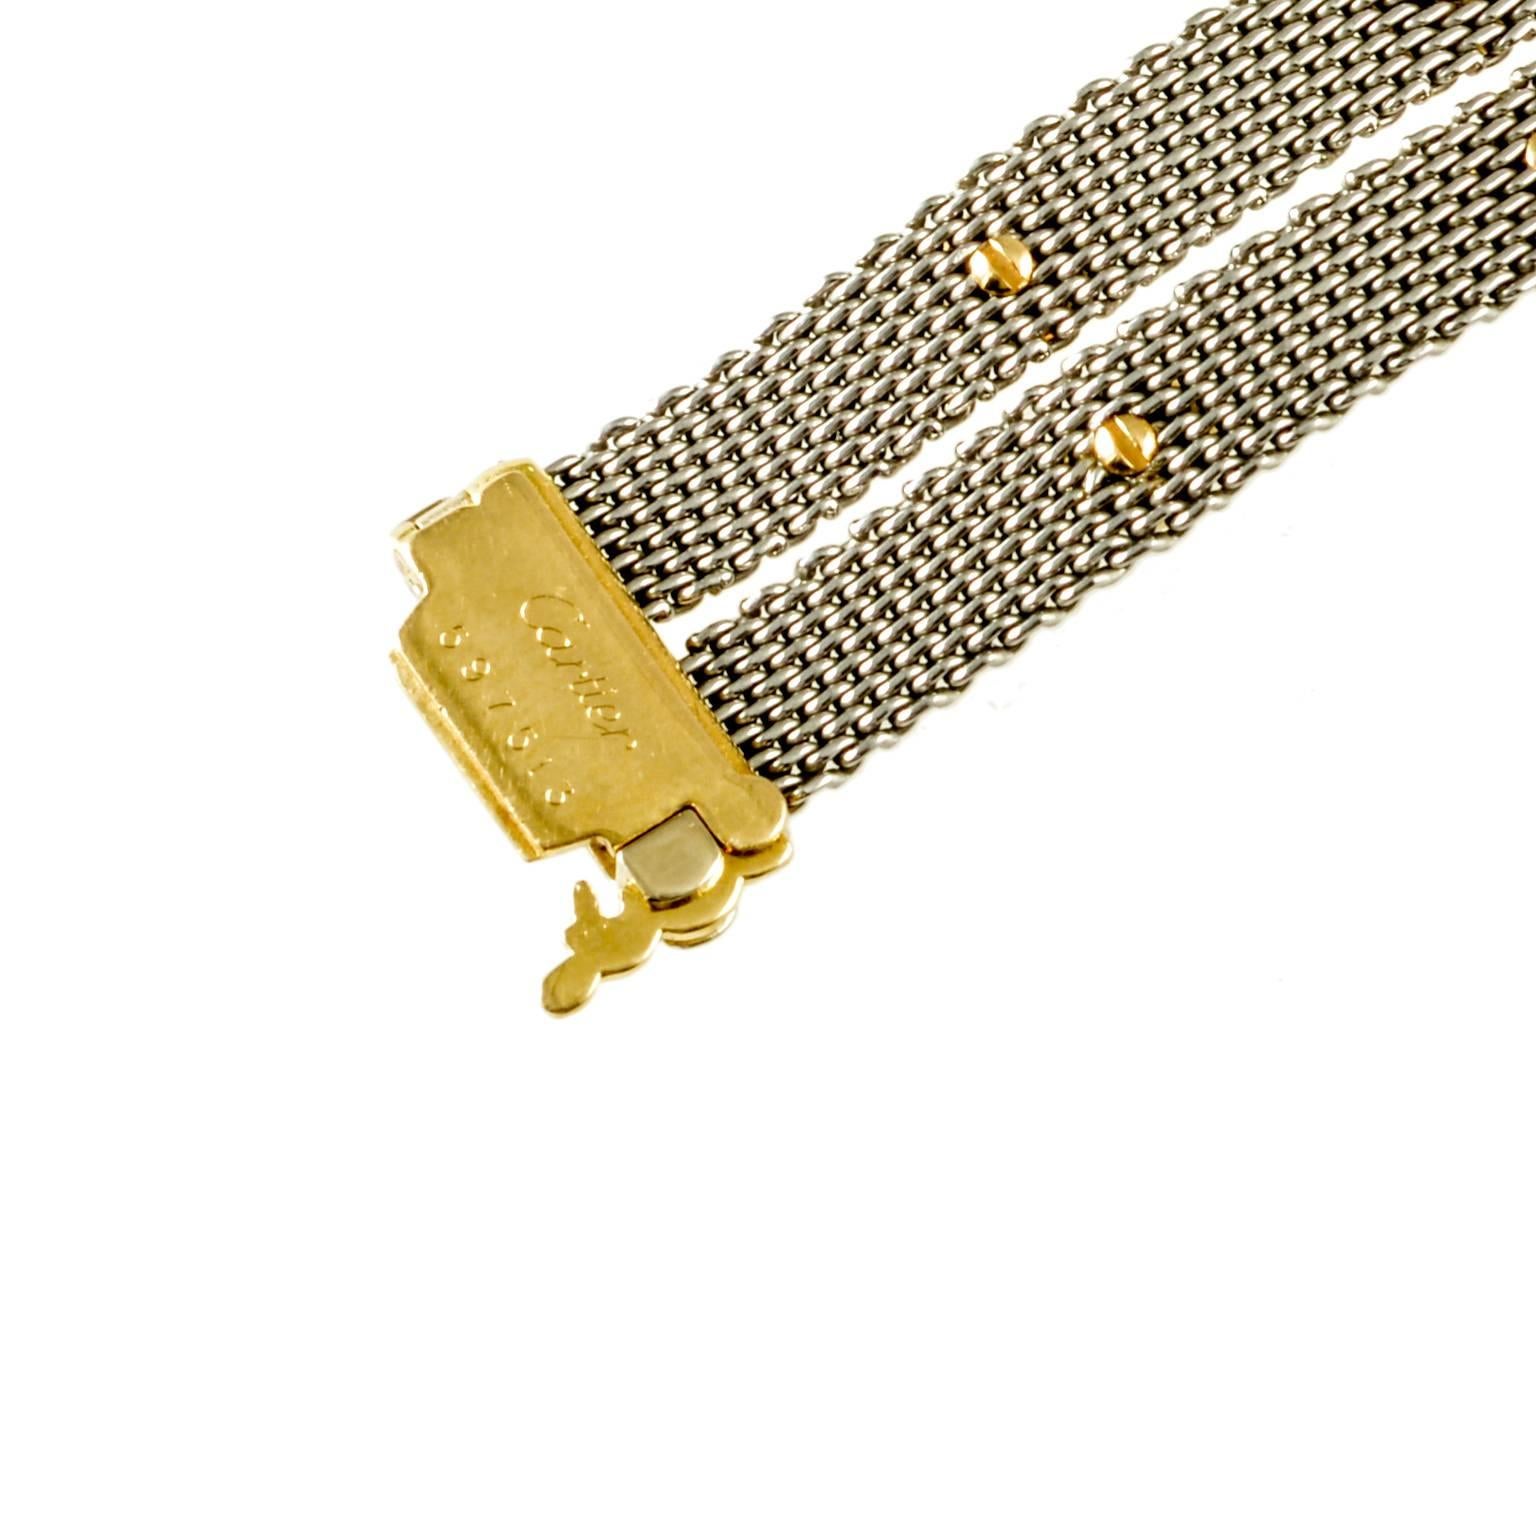 Contemporary Cartier Gold and Metal Cab Sapphire Bracelet, circa 1980